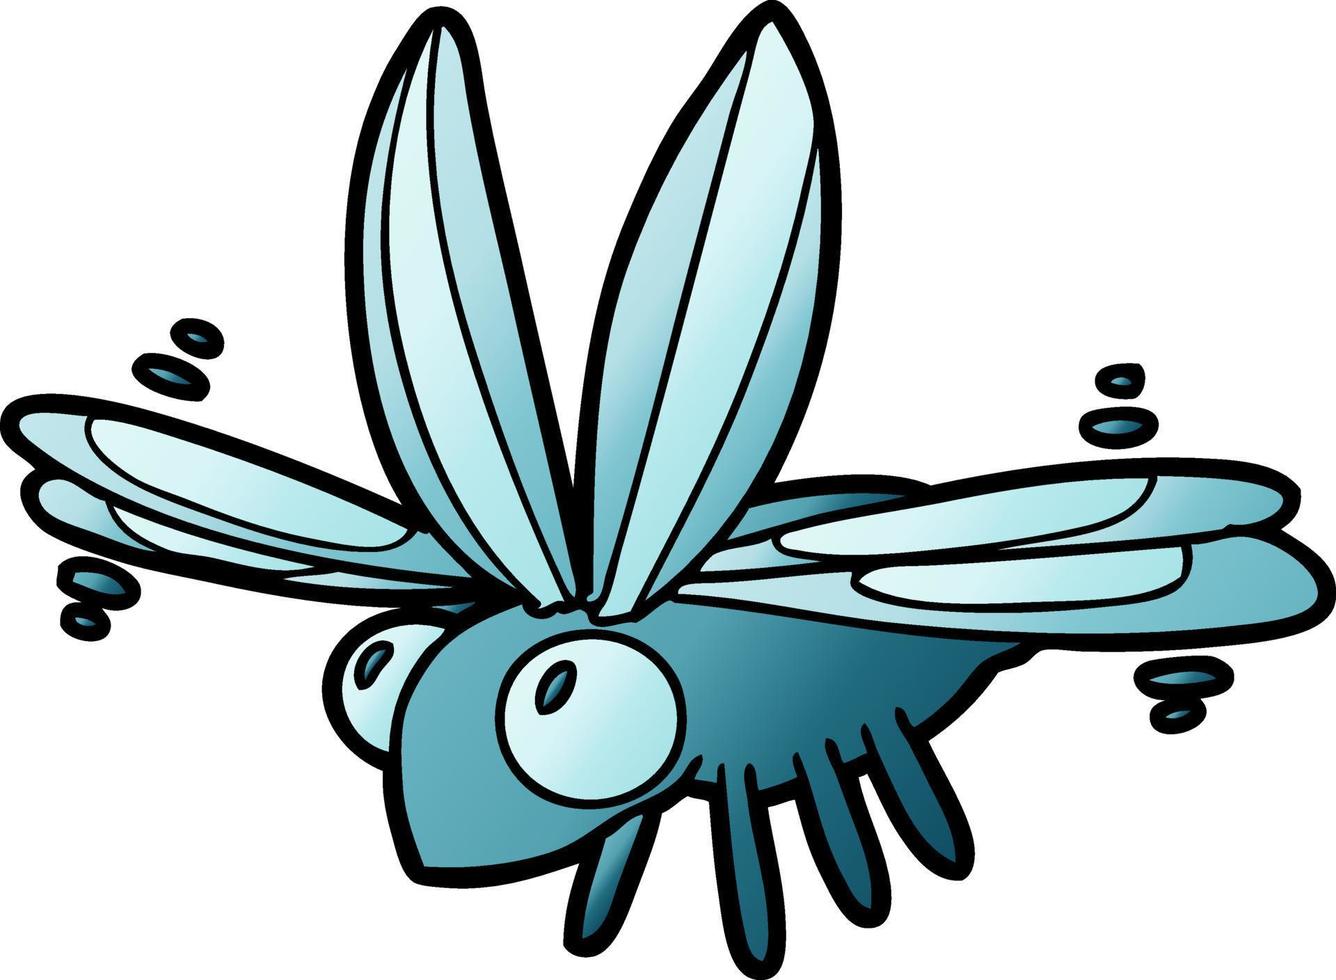 lindo insecto de dibujos animados volando vector